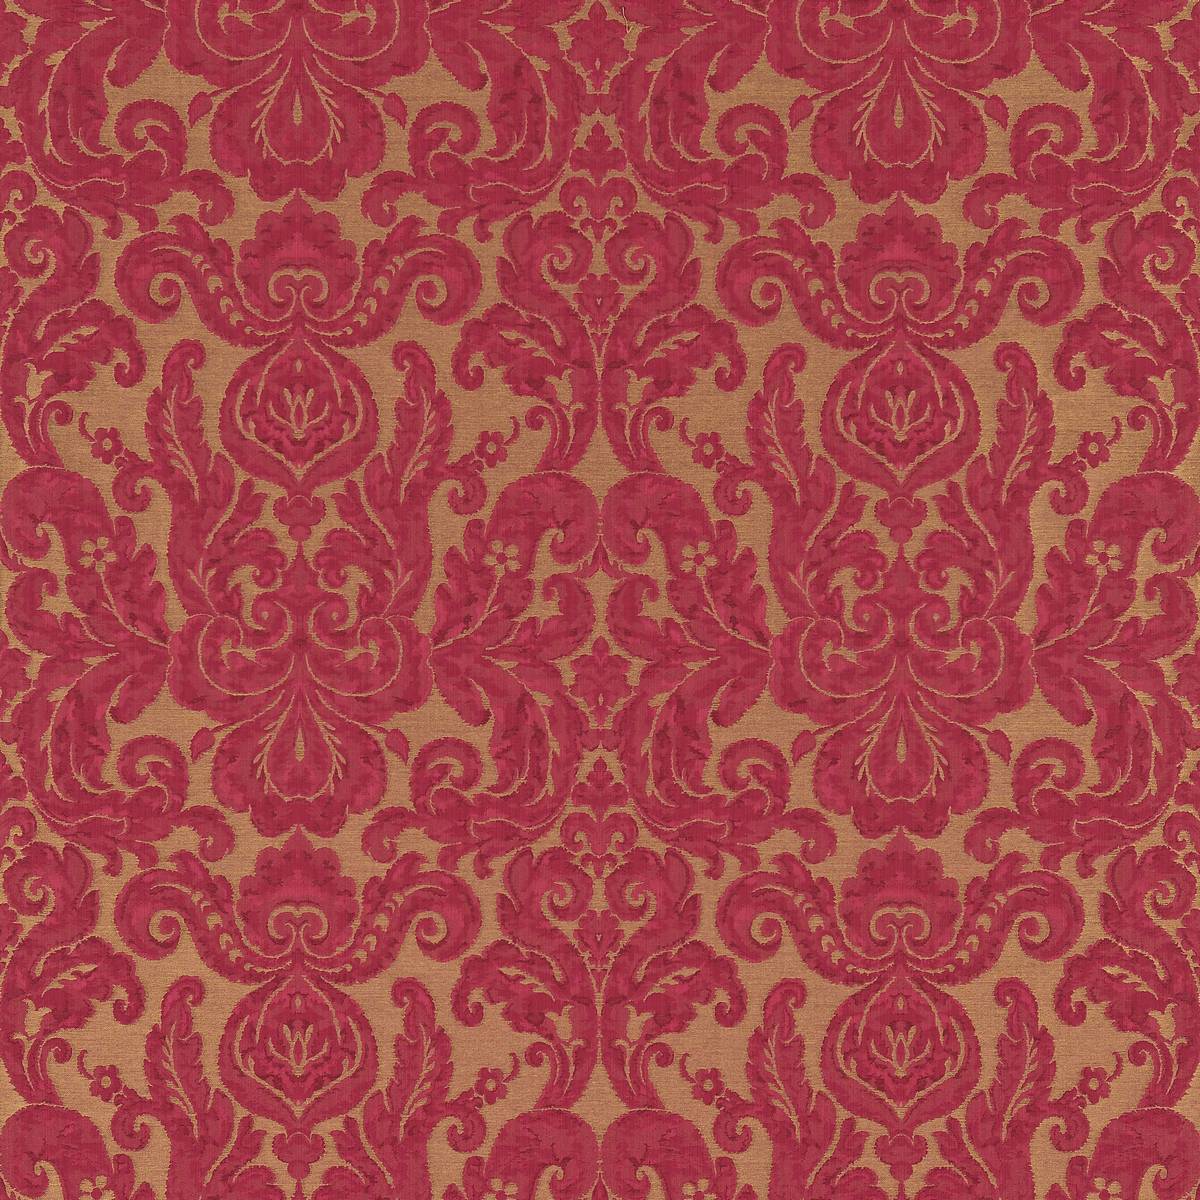 Brocatello Poppy Fabric by Zoffany